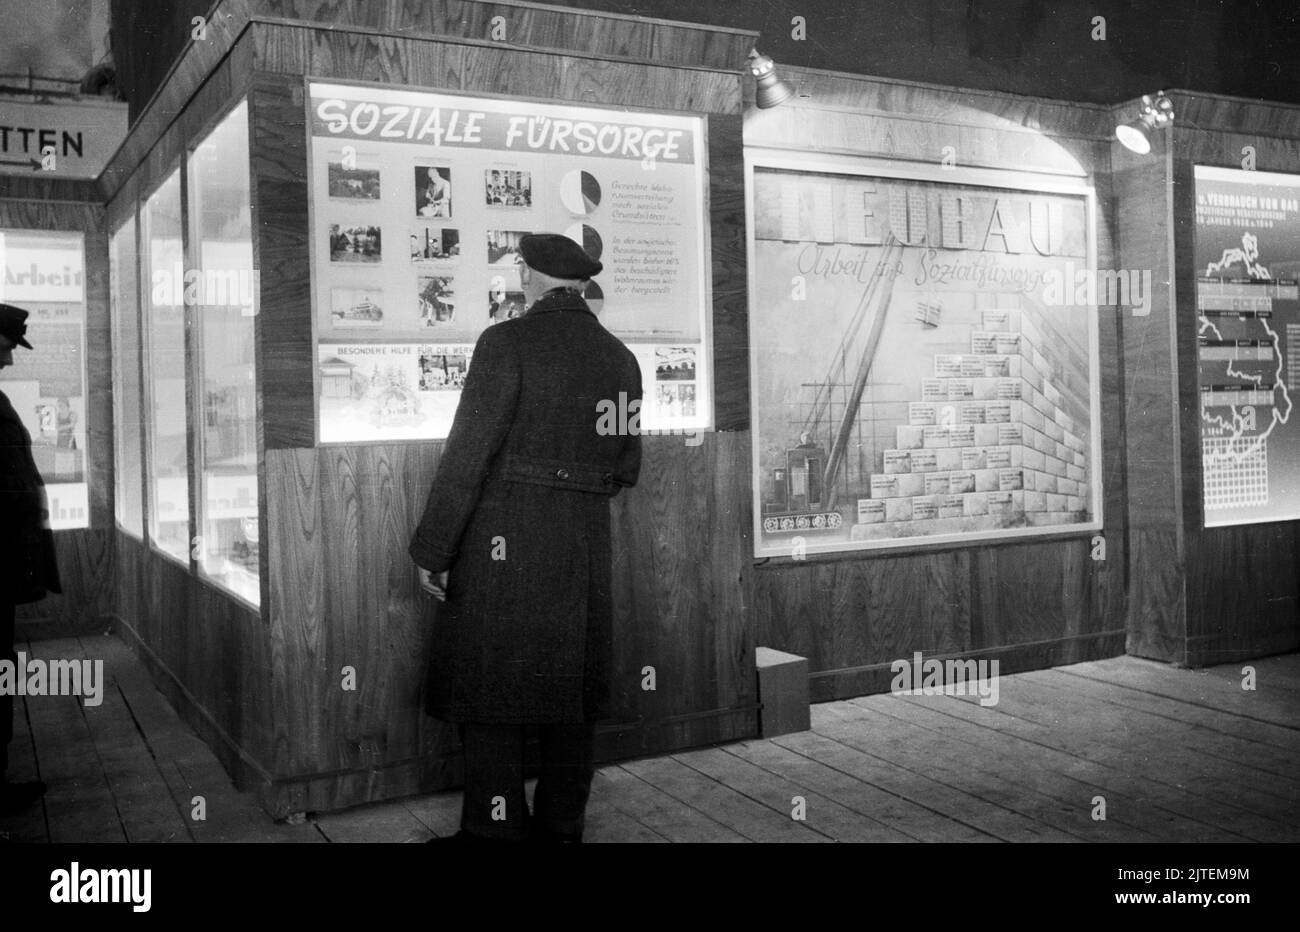 Messebesuch am Informationsschaukasten für Soziale Fürsorge bei der Frühjahrsmesse in Leipzig, Deutschland 1947. Stockfoto